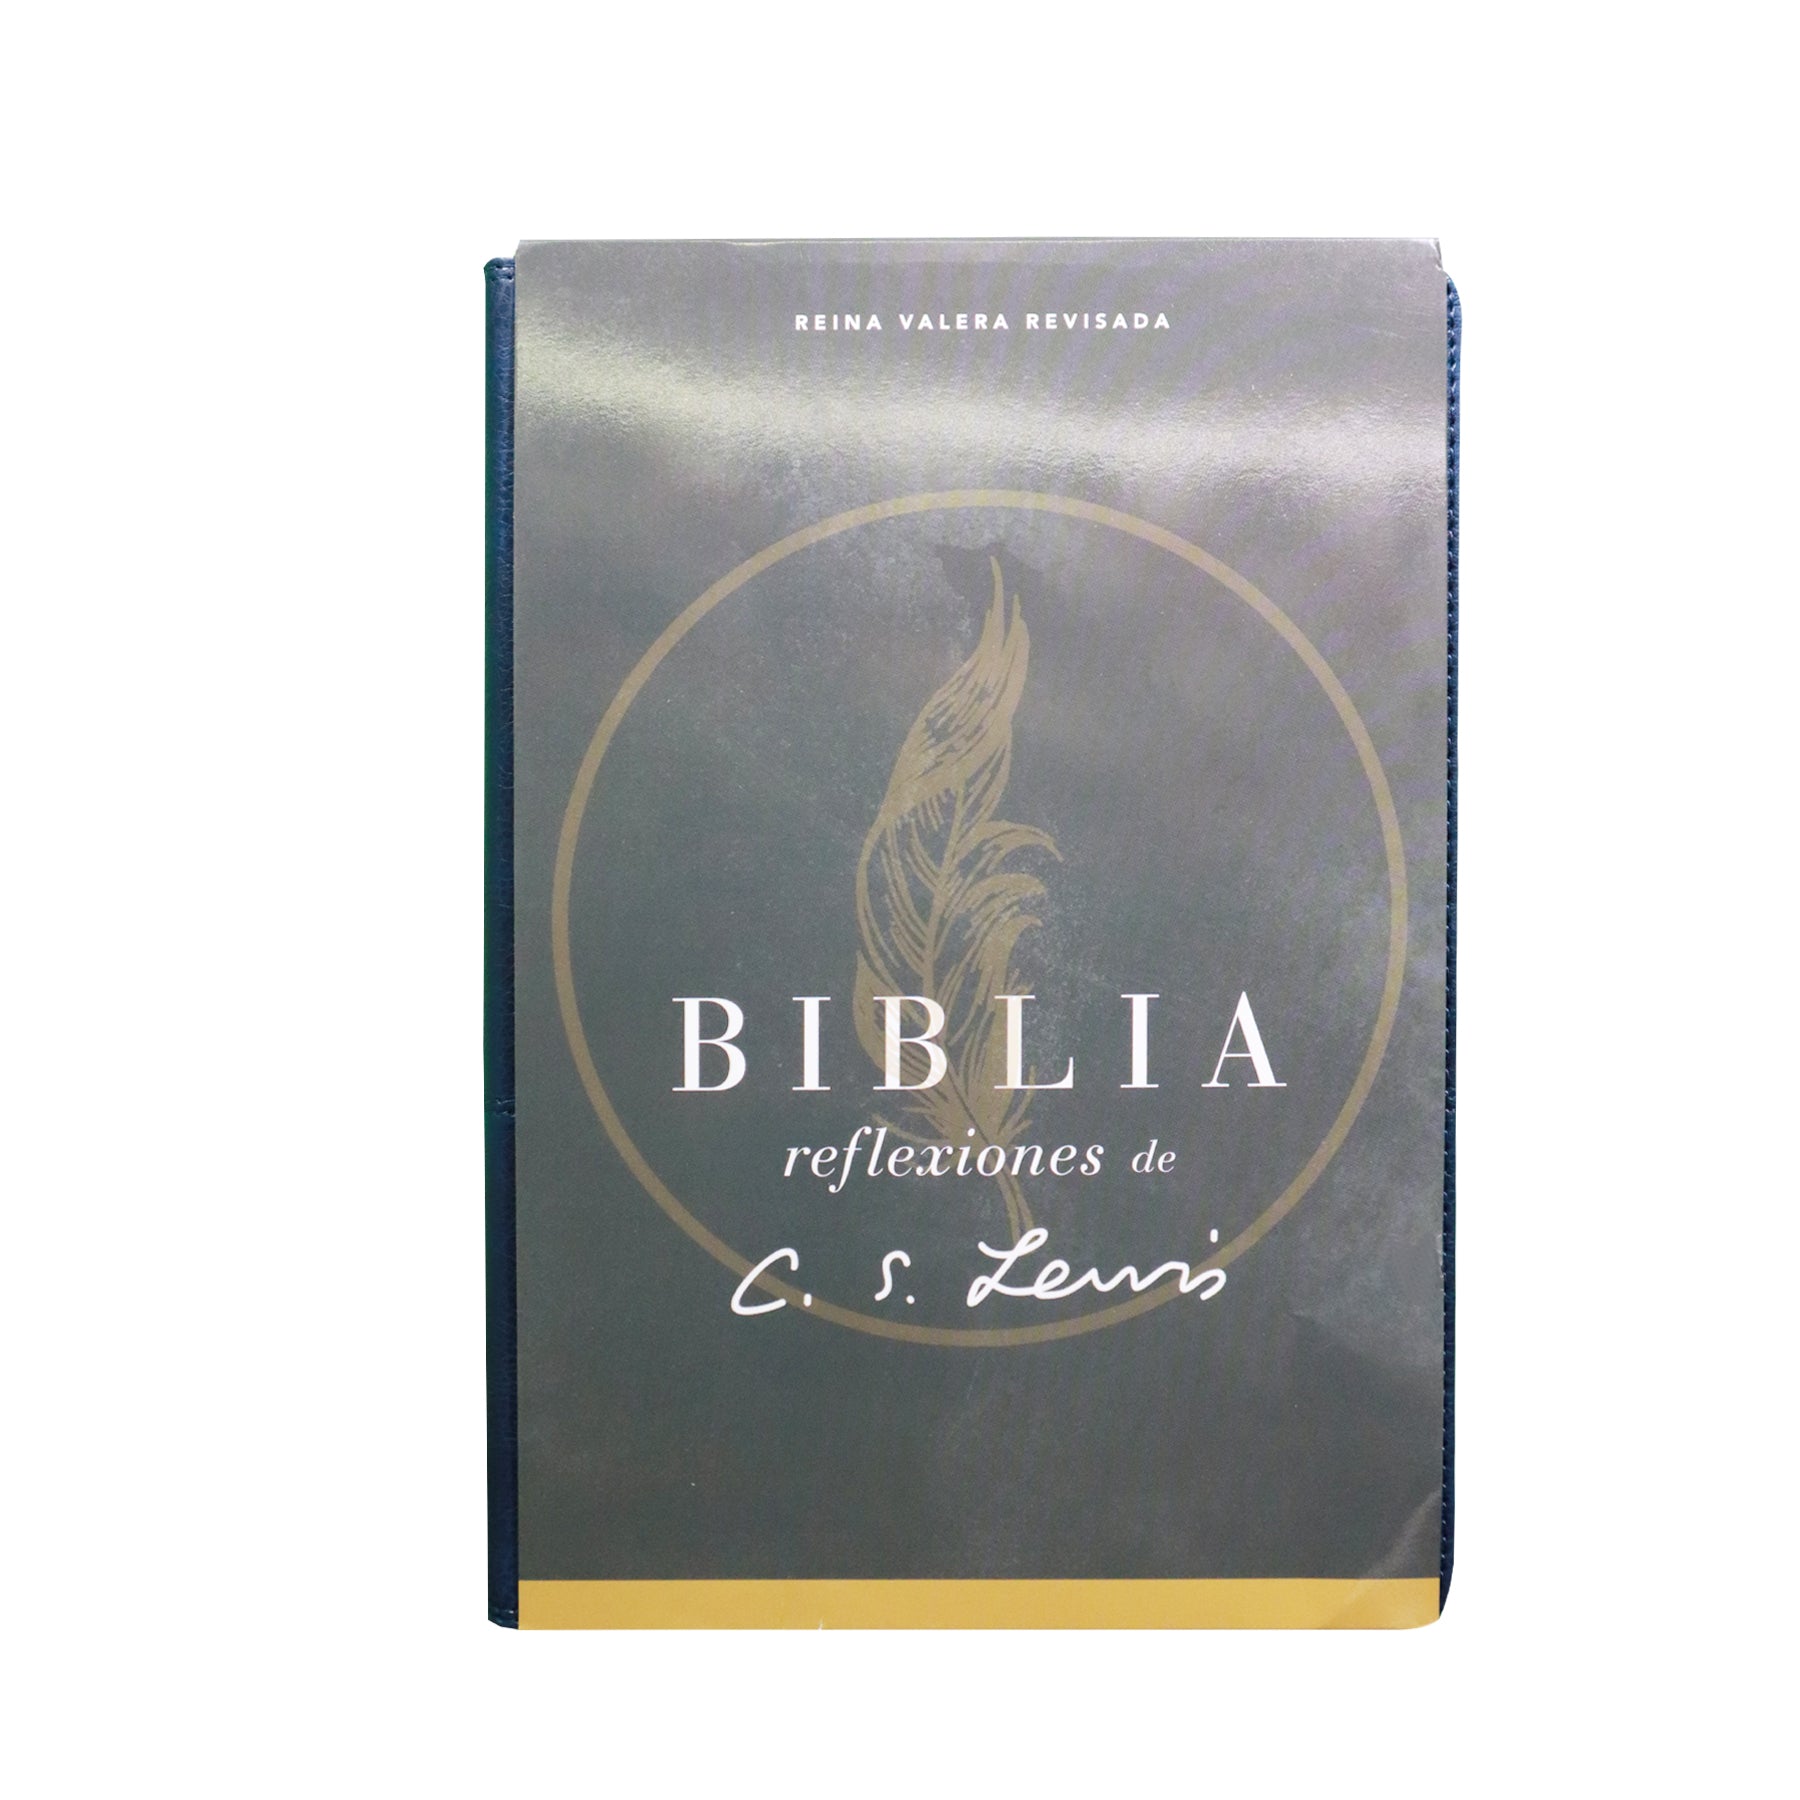 BIBLIA  REINA  VALERA REFLEXIONES DE C.S LEWIS / AZUL MARINO